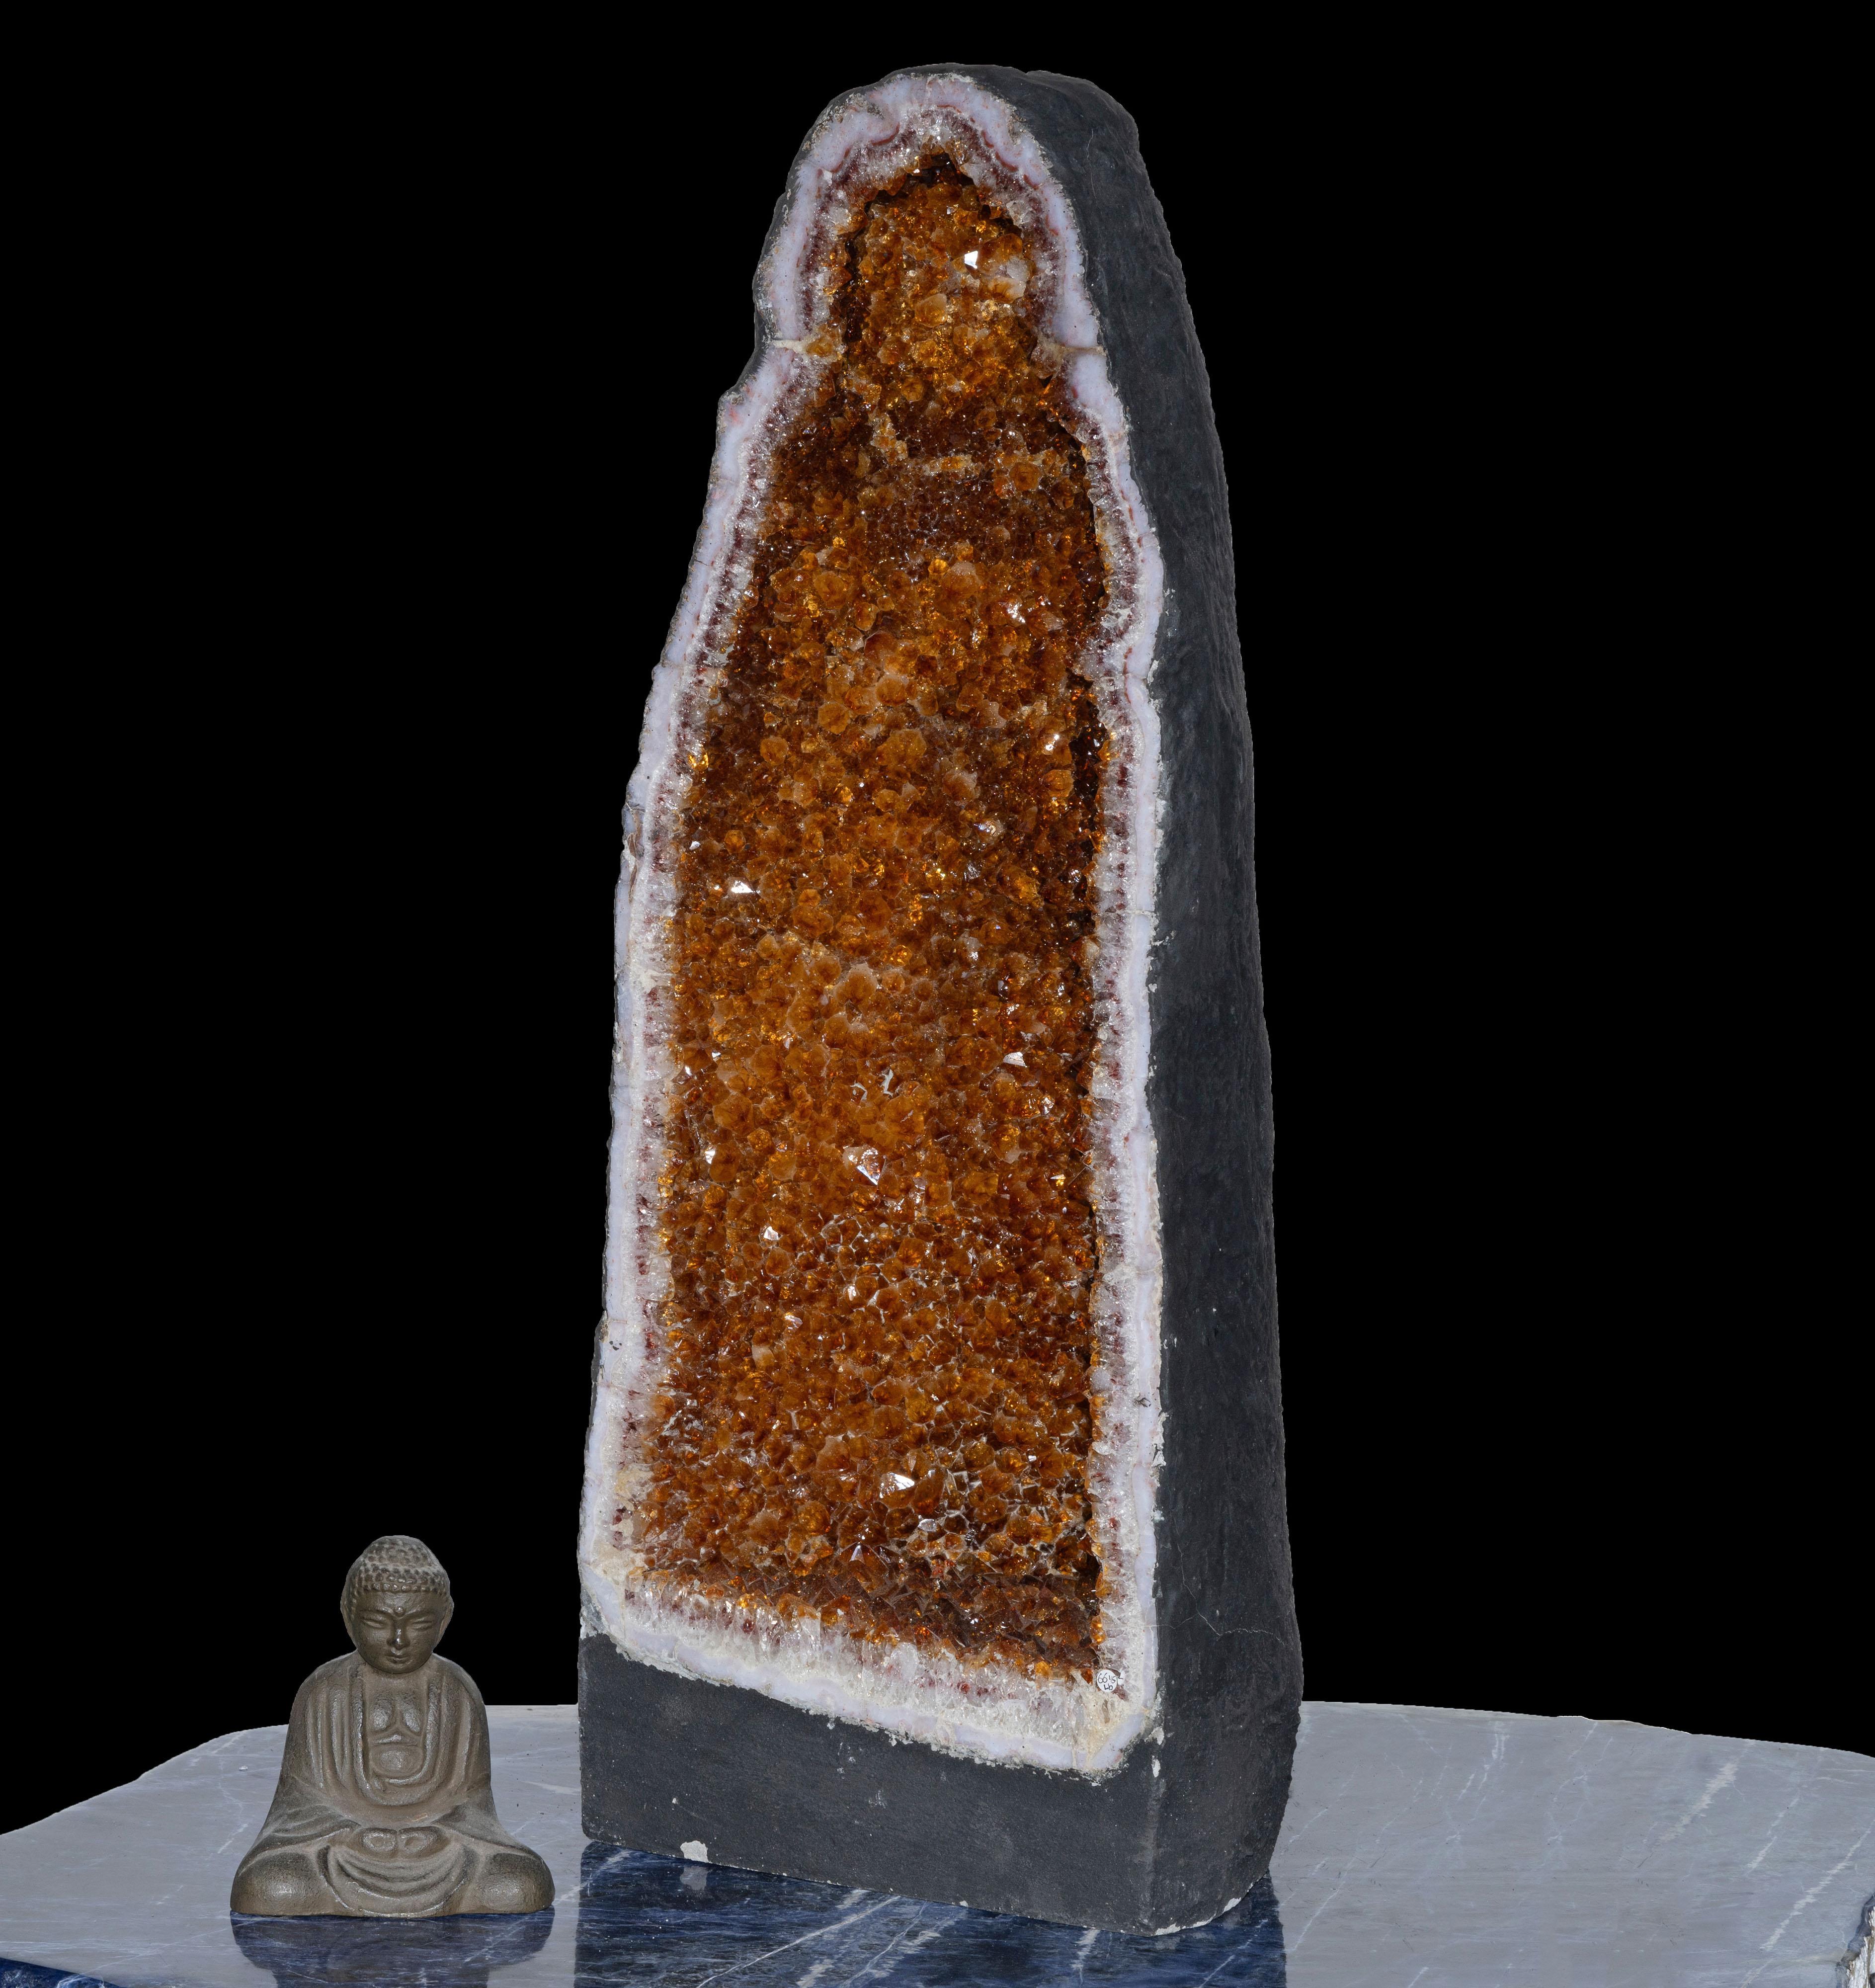 Cette cathédrale de citrine sinueuse de plus de deux pieds de haut en provenance du Brésil brille de l'intérieur avec un revêtement lustré de cristaux de citrine ambrés ardents, entièrement formés et terminés de manière naturelle. Cette acquisition